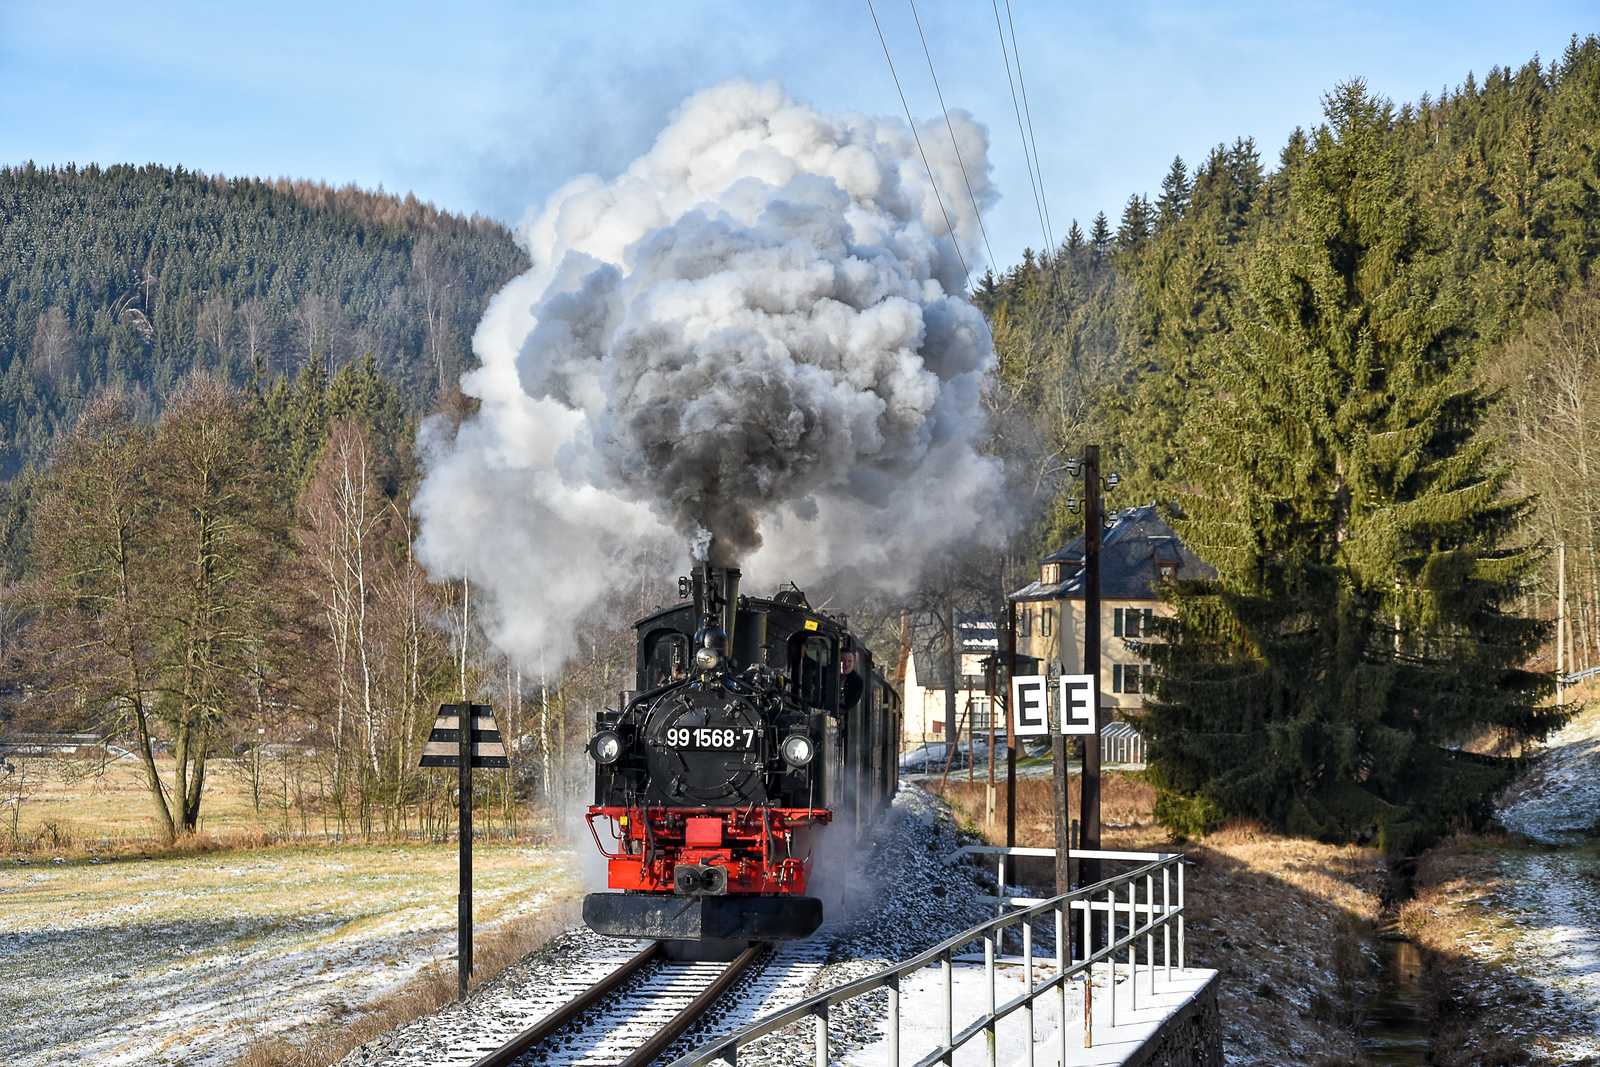 Auf der Preßnitztalbahn waren am 29. Dezember 2019 die beiden IV K 99 1594-3 und 99 1568-7 im Einsatz, letztere hier bei der Einfahrt in den Bahnhof Schmalzgrube.